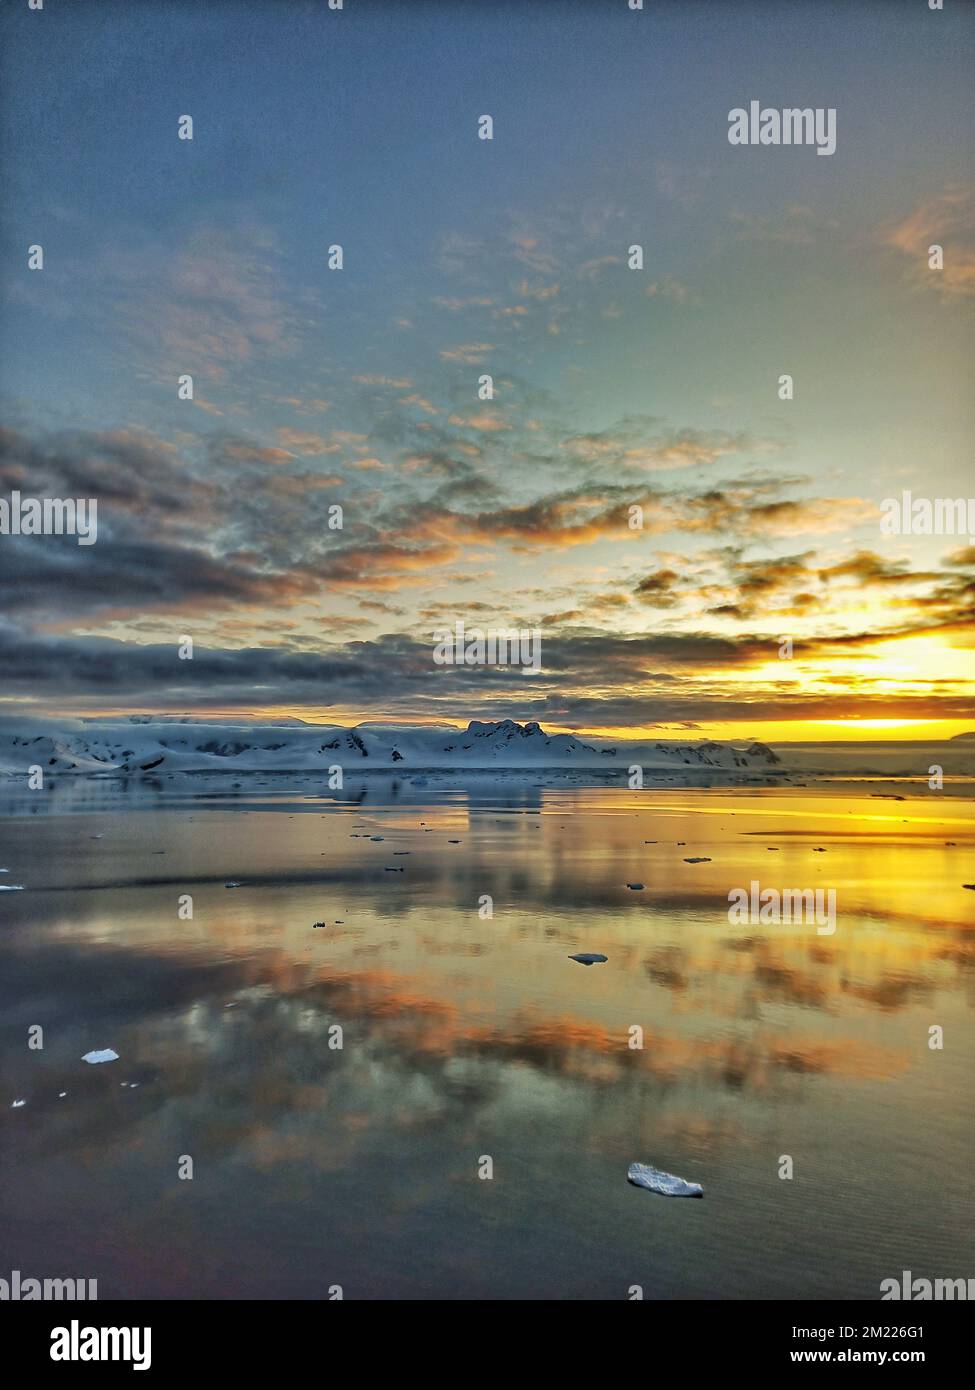 Wunderschöne Aussicht auf den Sonnenuntergang in der antarktis, antarktis Landschaft, atntaktischer Sonnenuntergang, antarktis Sonnenuntergang, Sonnenuntergang, antarktis, antarktis Eisberg, antarktis Gletscher Stockfoto